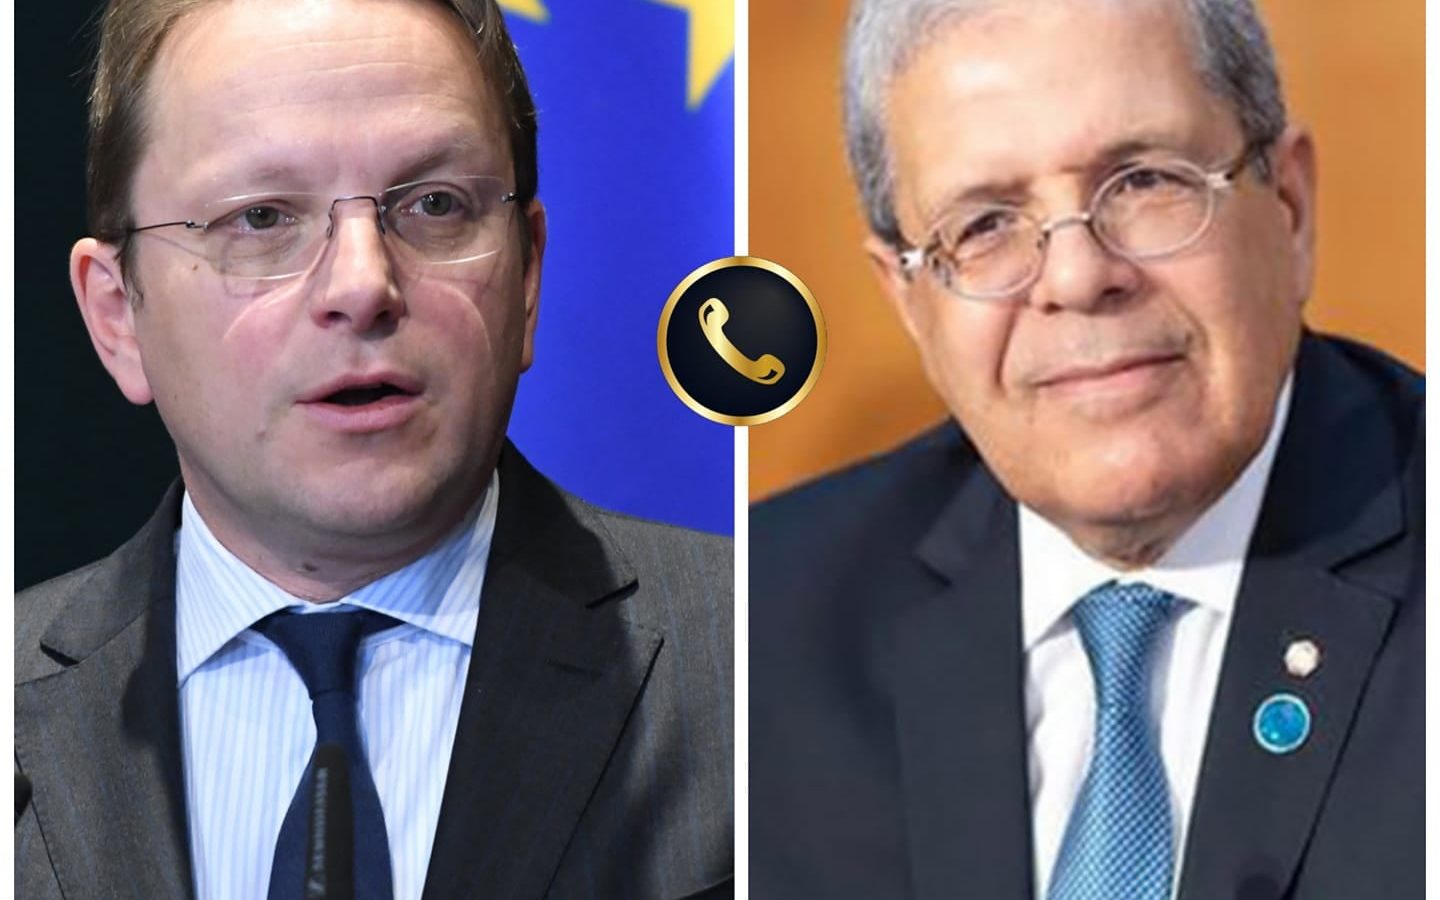 مسؤول أوروبي رفيع يؤجل زيارته لتونس